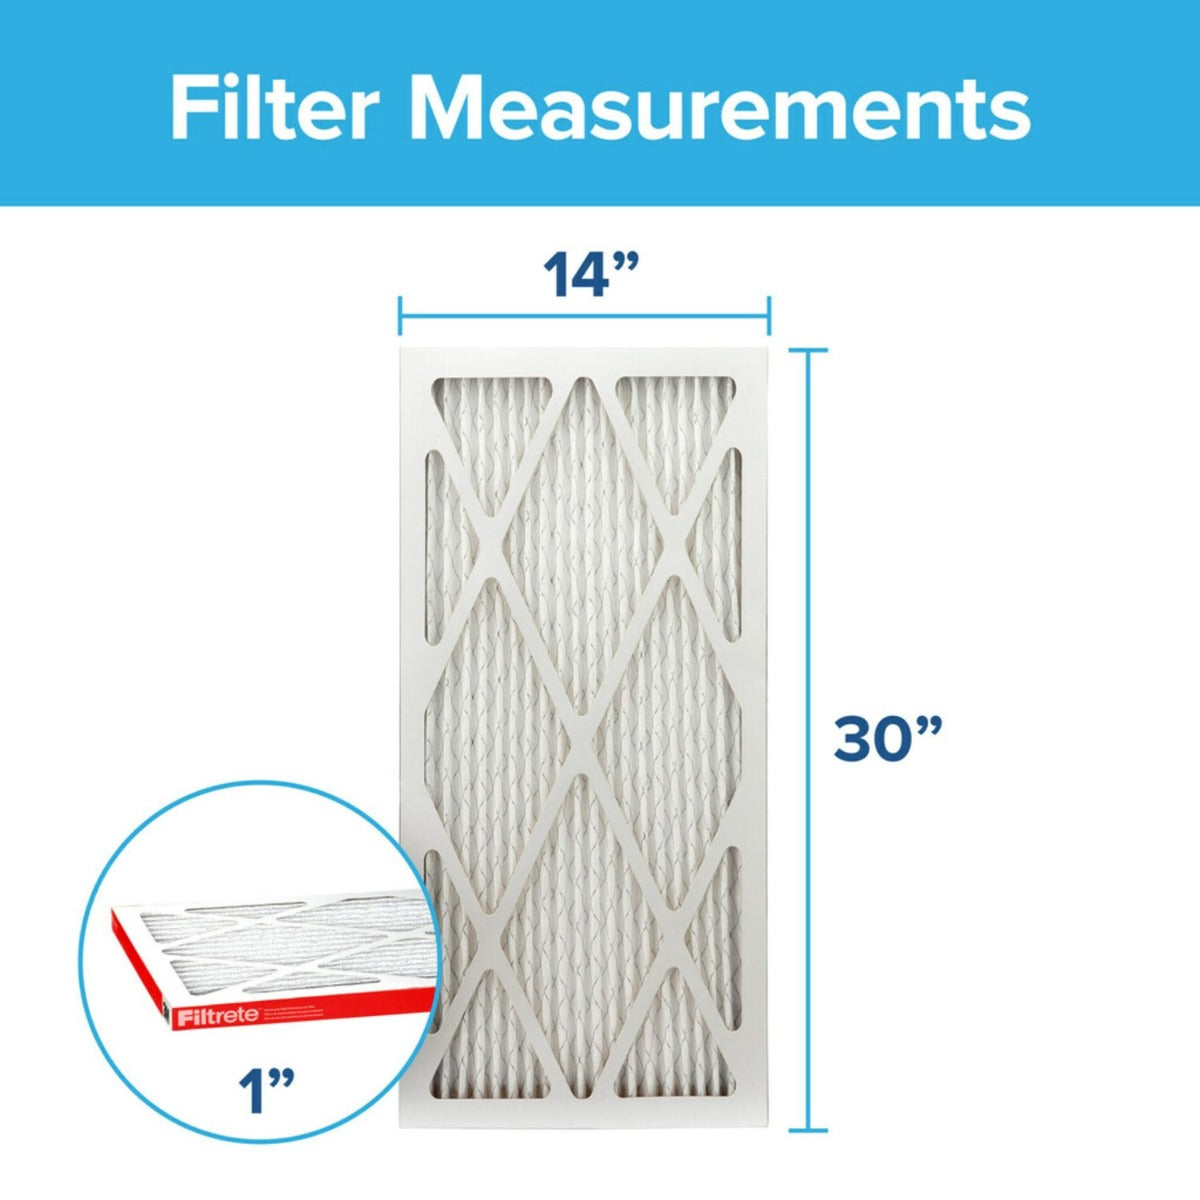 3M Filtrete 1000 Micro Allergen & Dust Defense Filter - 14x30x1 (4-Pack)